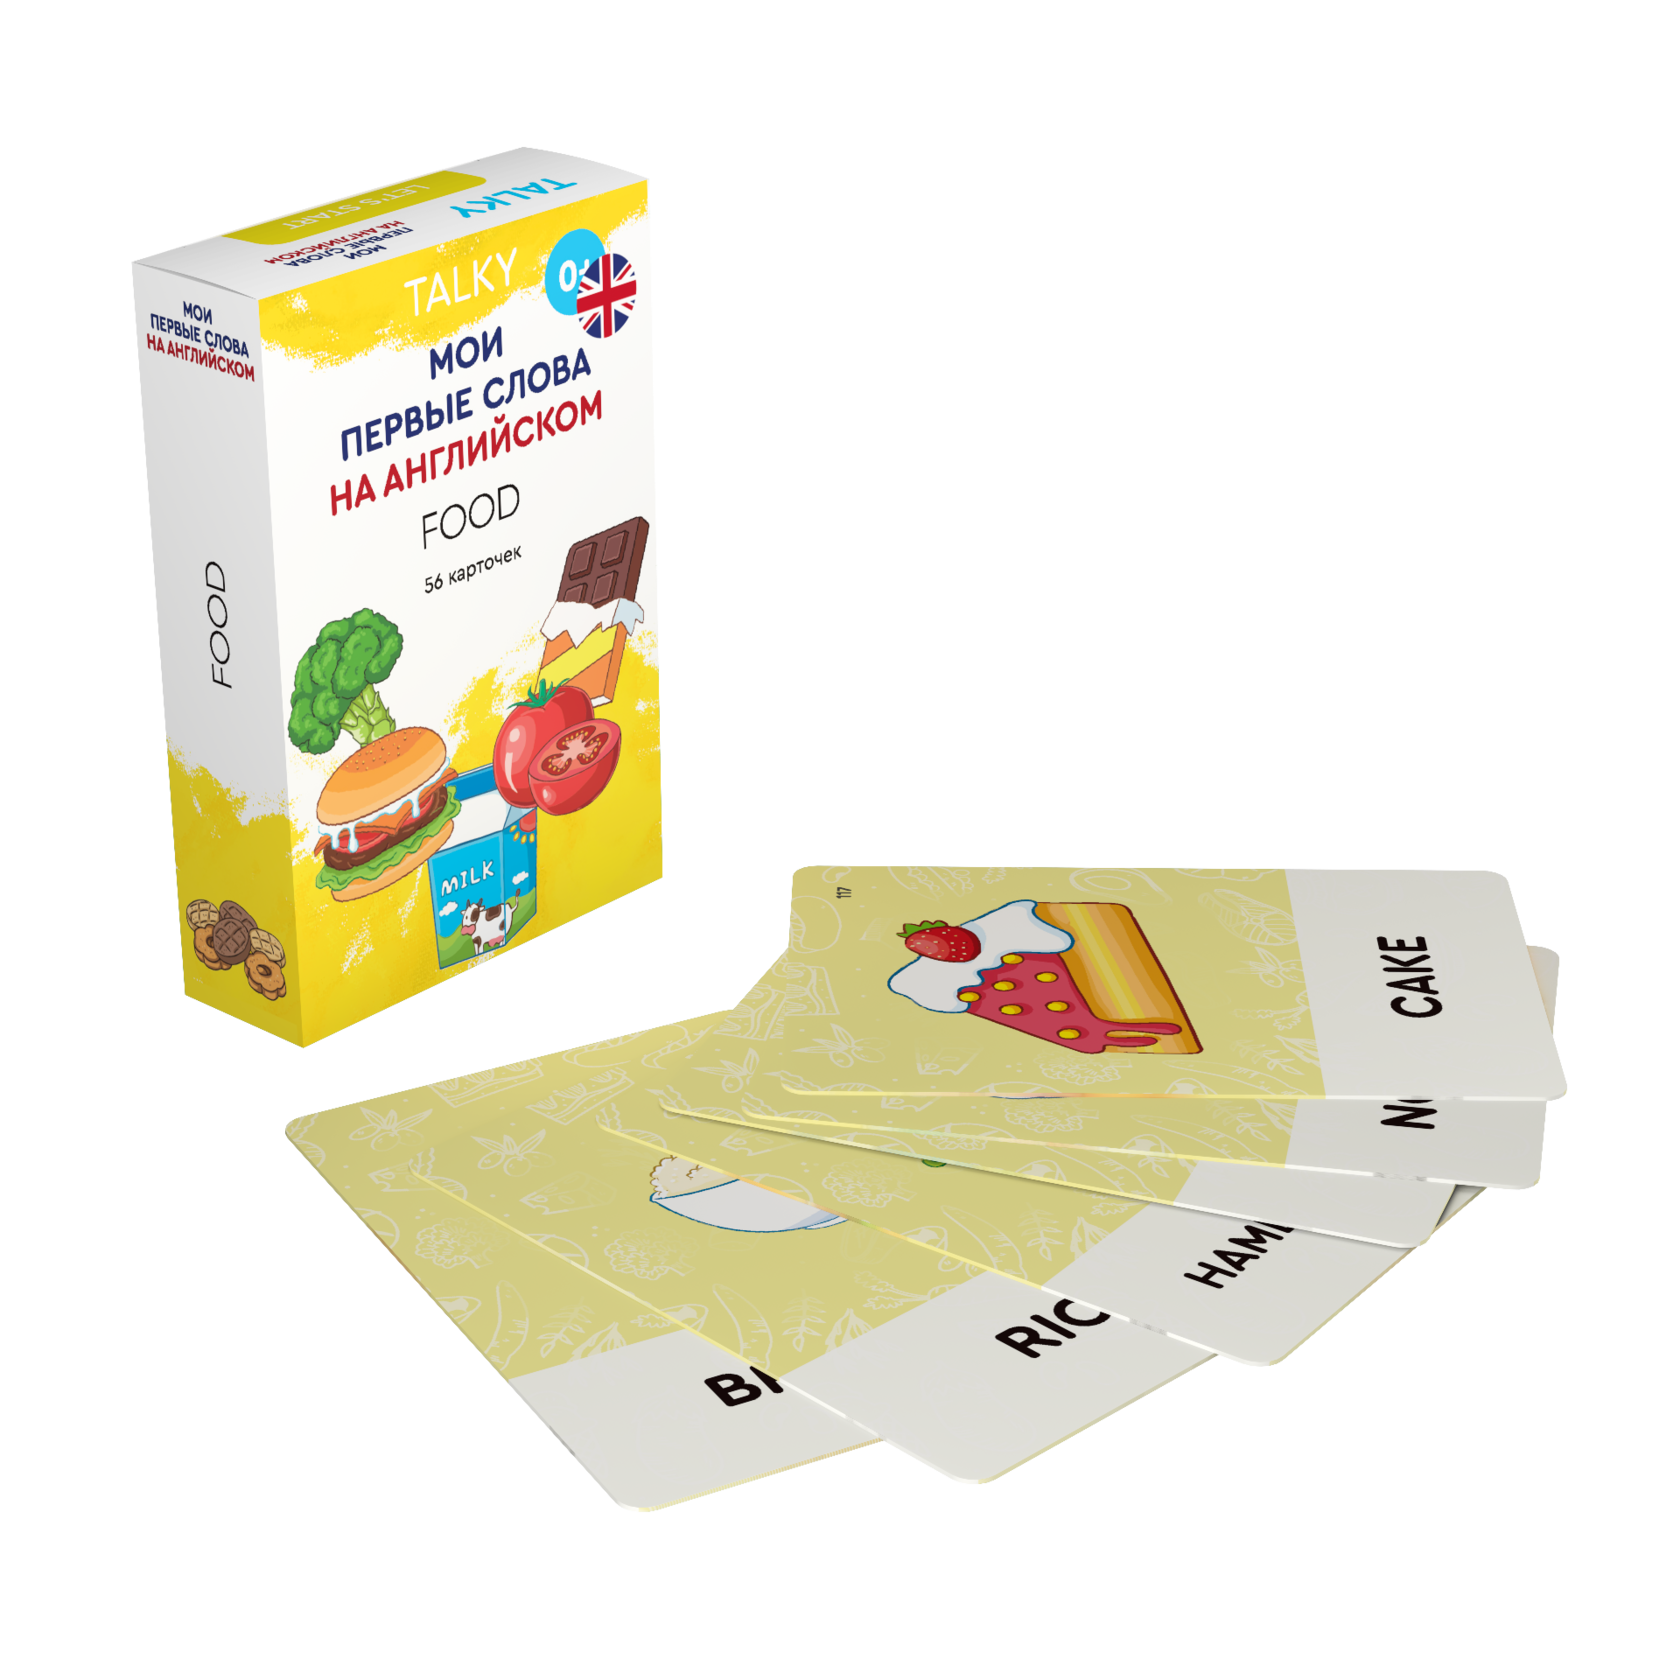 Развивающие карточки для детей LUMICUBE для TALKY, на англ. языке, еда, 56шт. KDTKE02-FOOD lumicube умные карточки talky на английском языке home transport